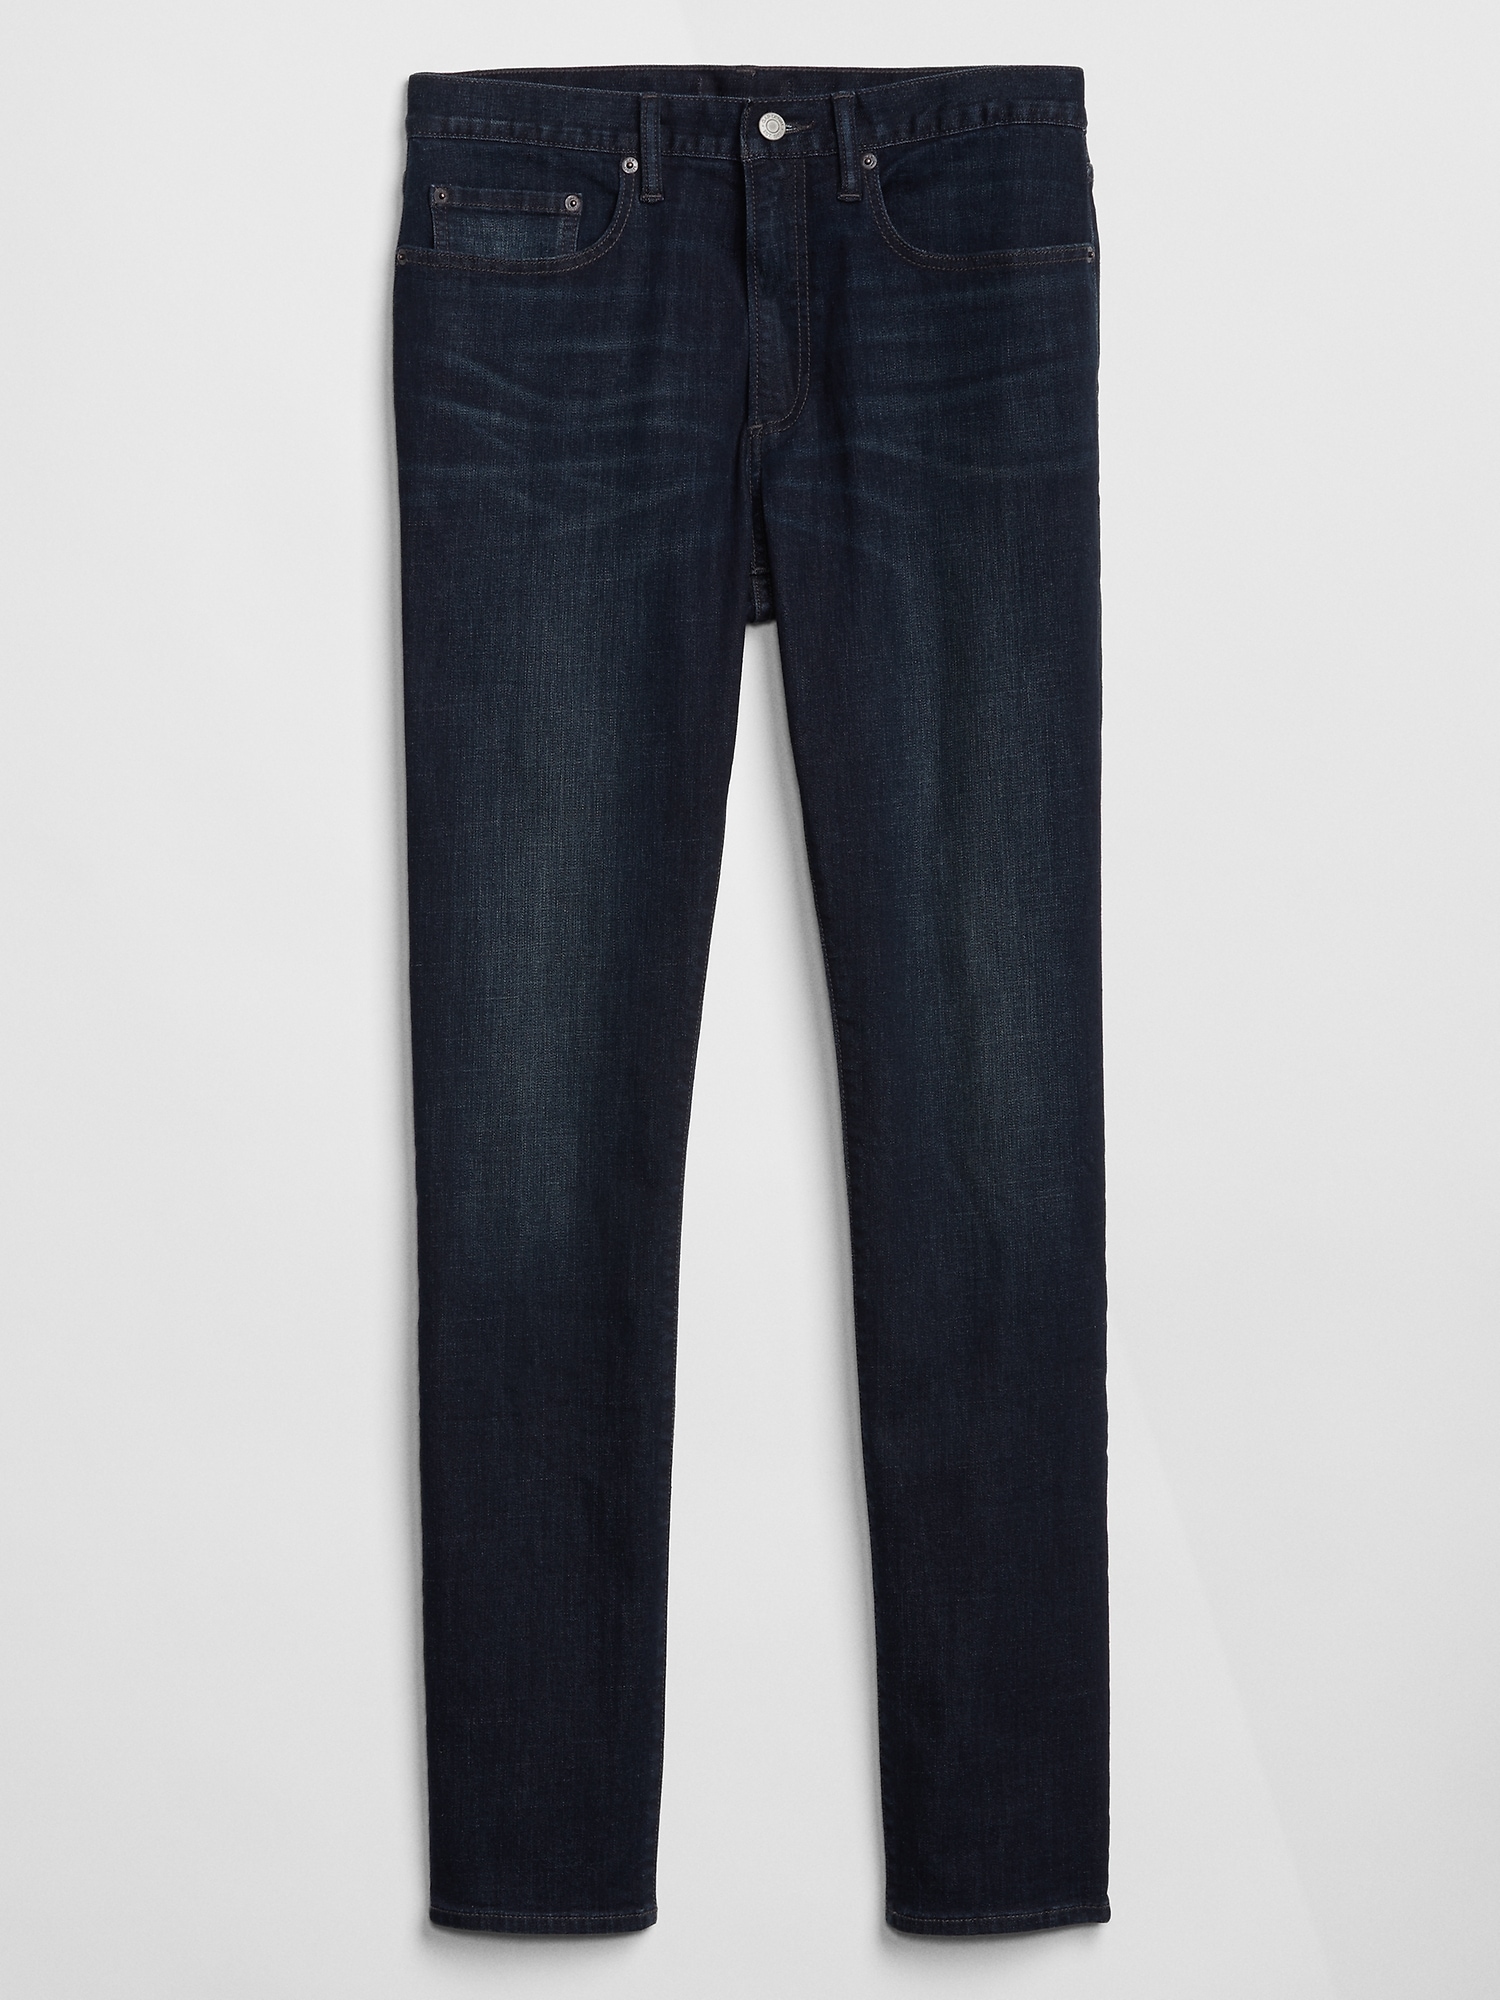 Gap Slim Fit Jeans With Gapflex - Worn Dark – Line Up Shop